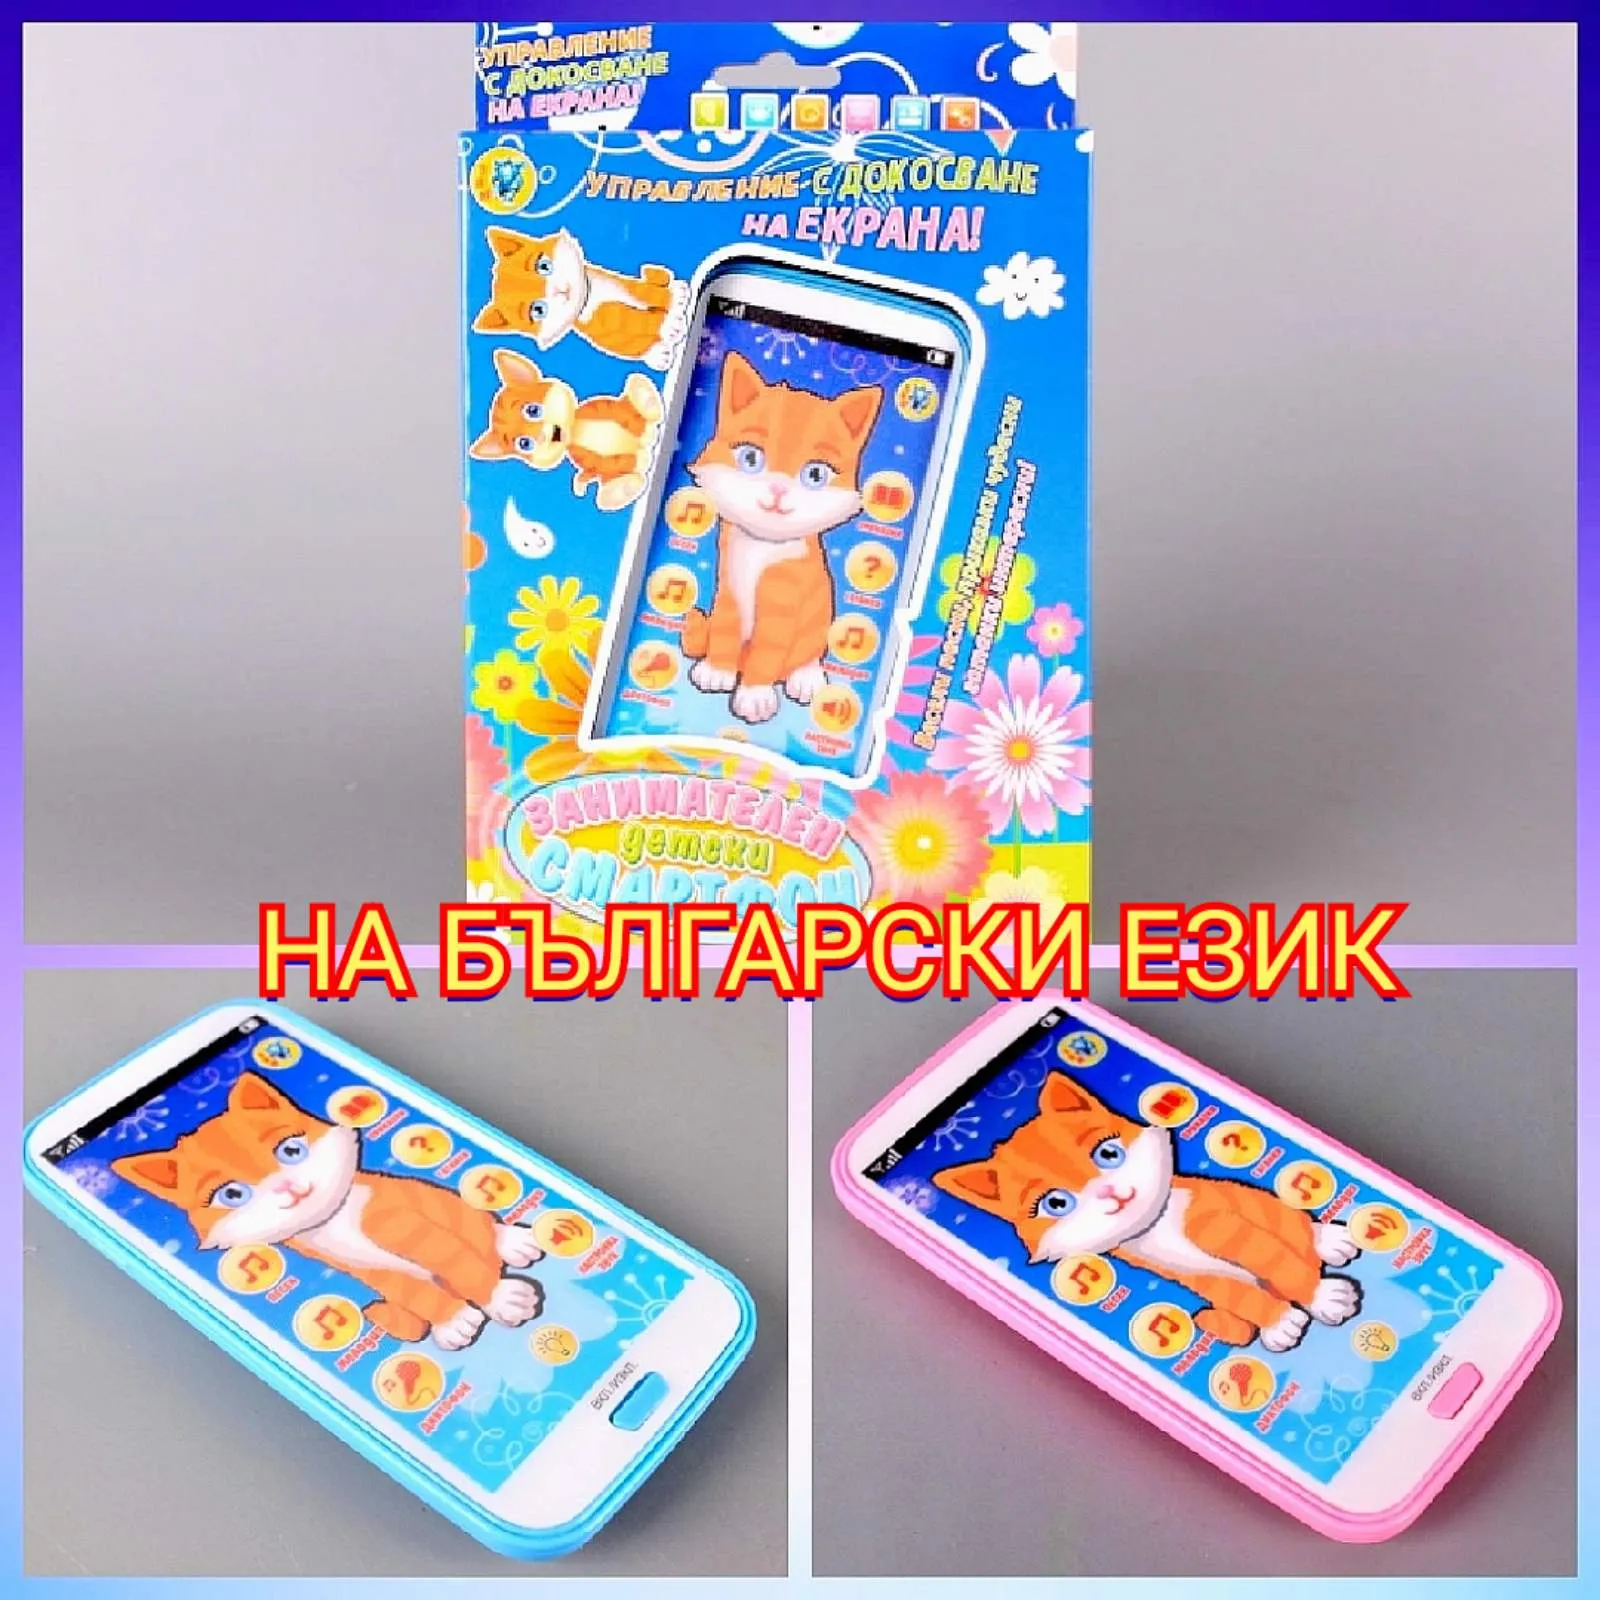 Занимателен детски смартфон на български език, Два цвята 1